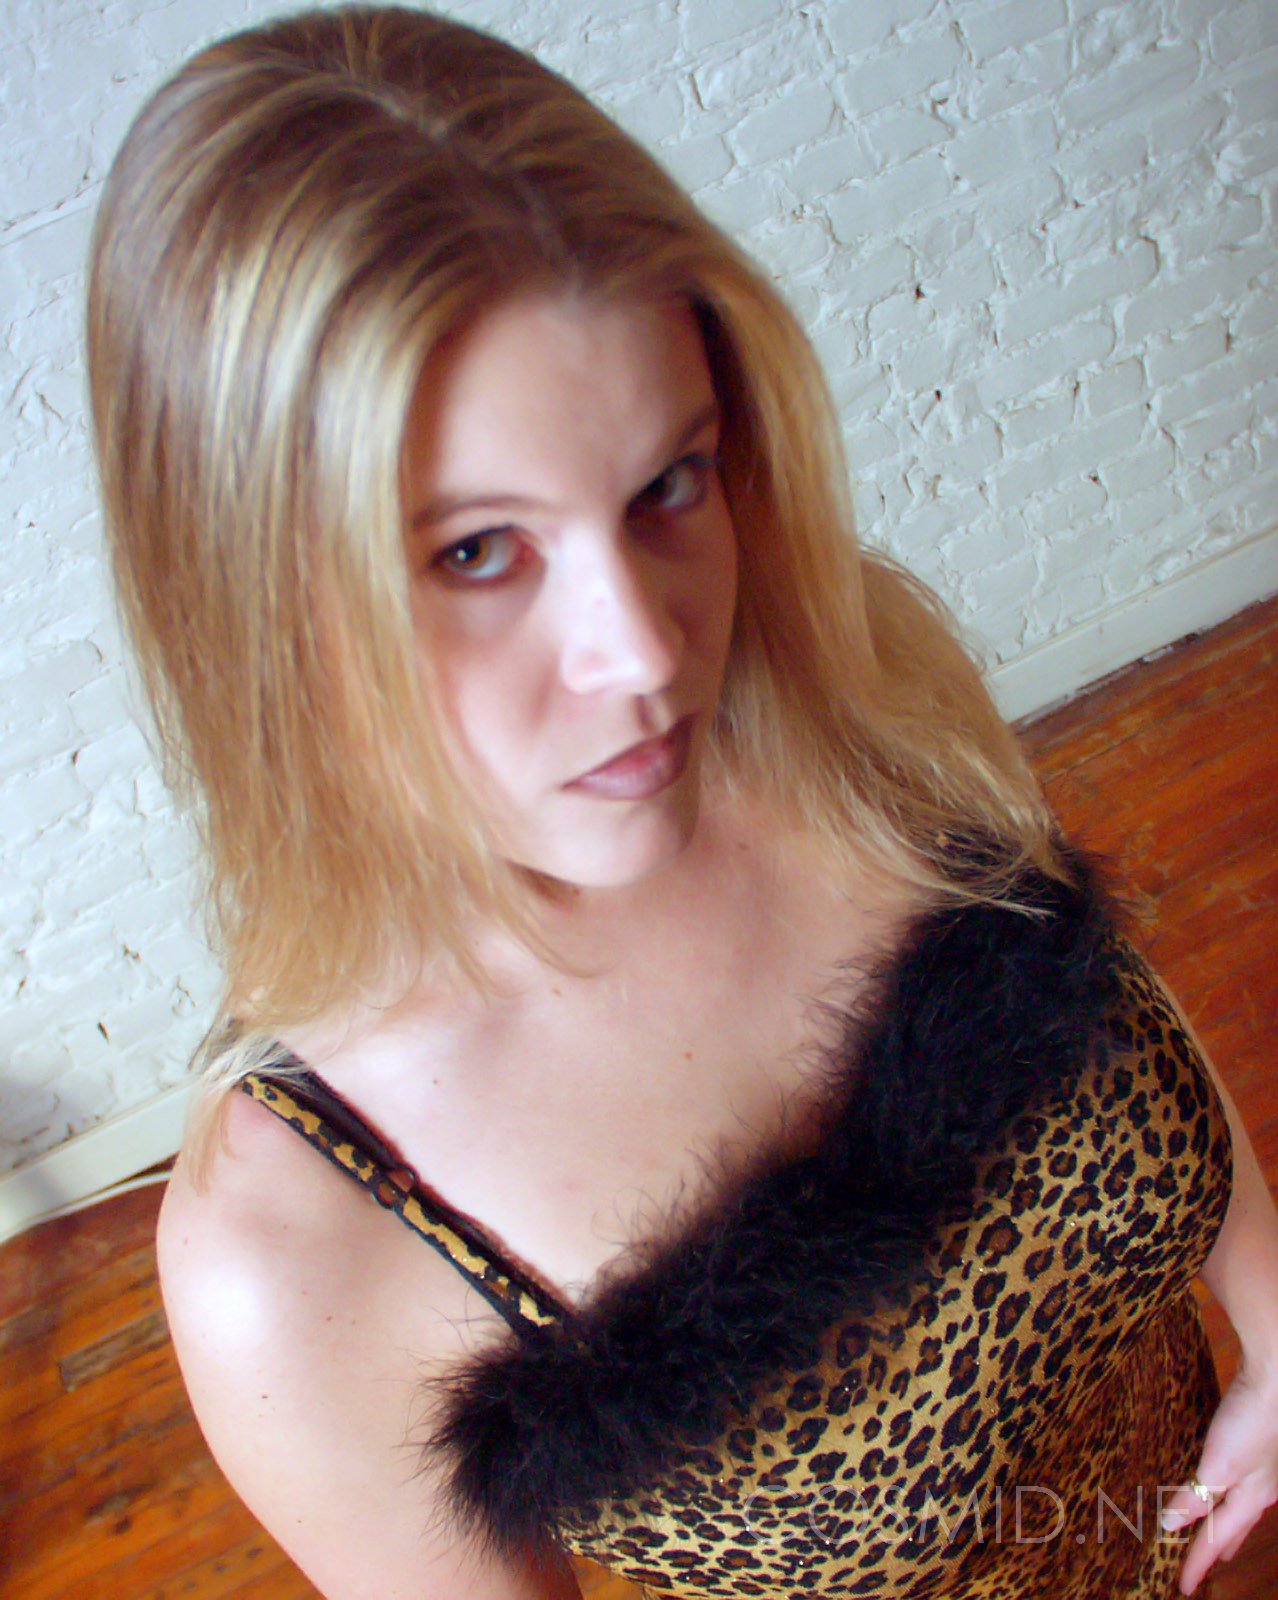 wpid-leopard-dress-tits7.jpg